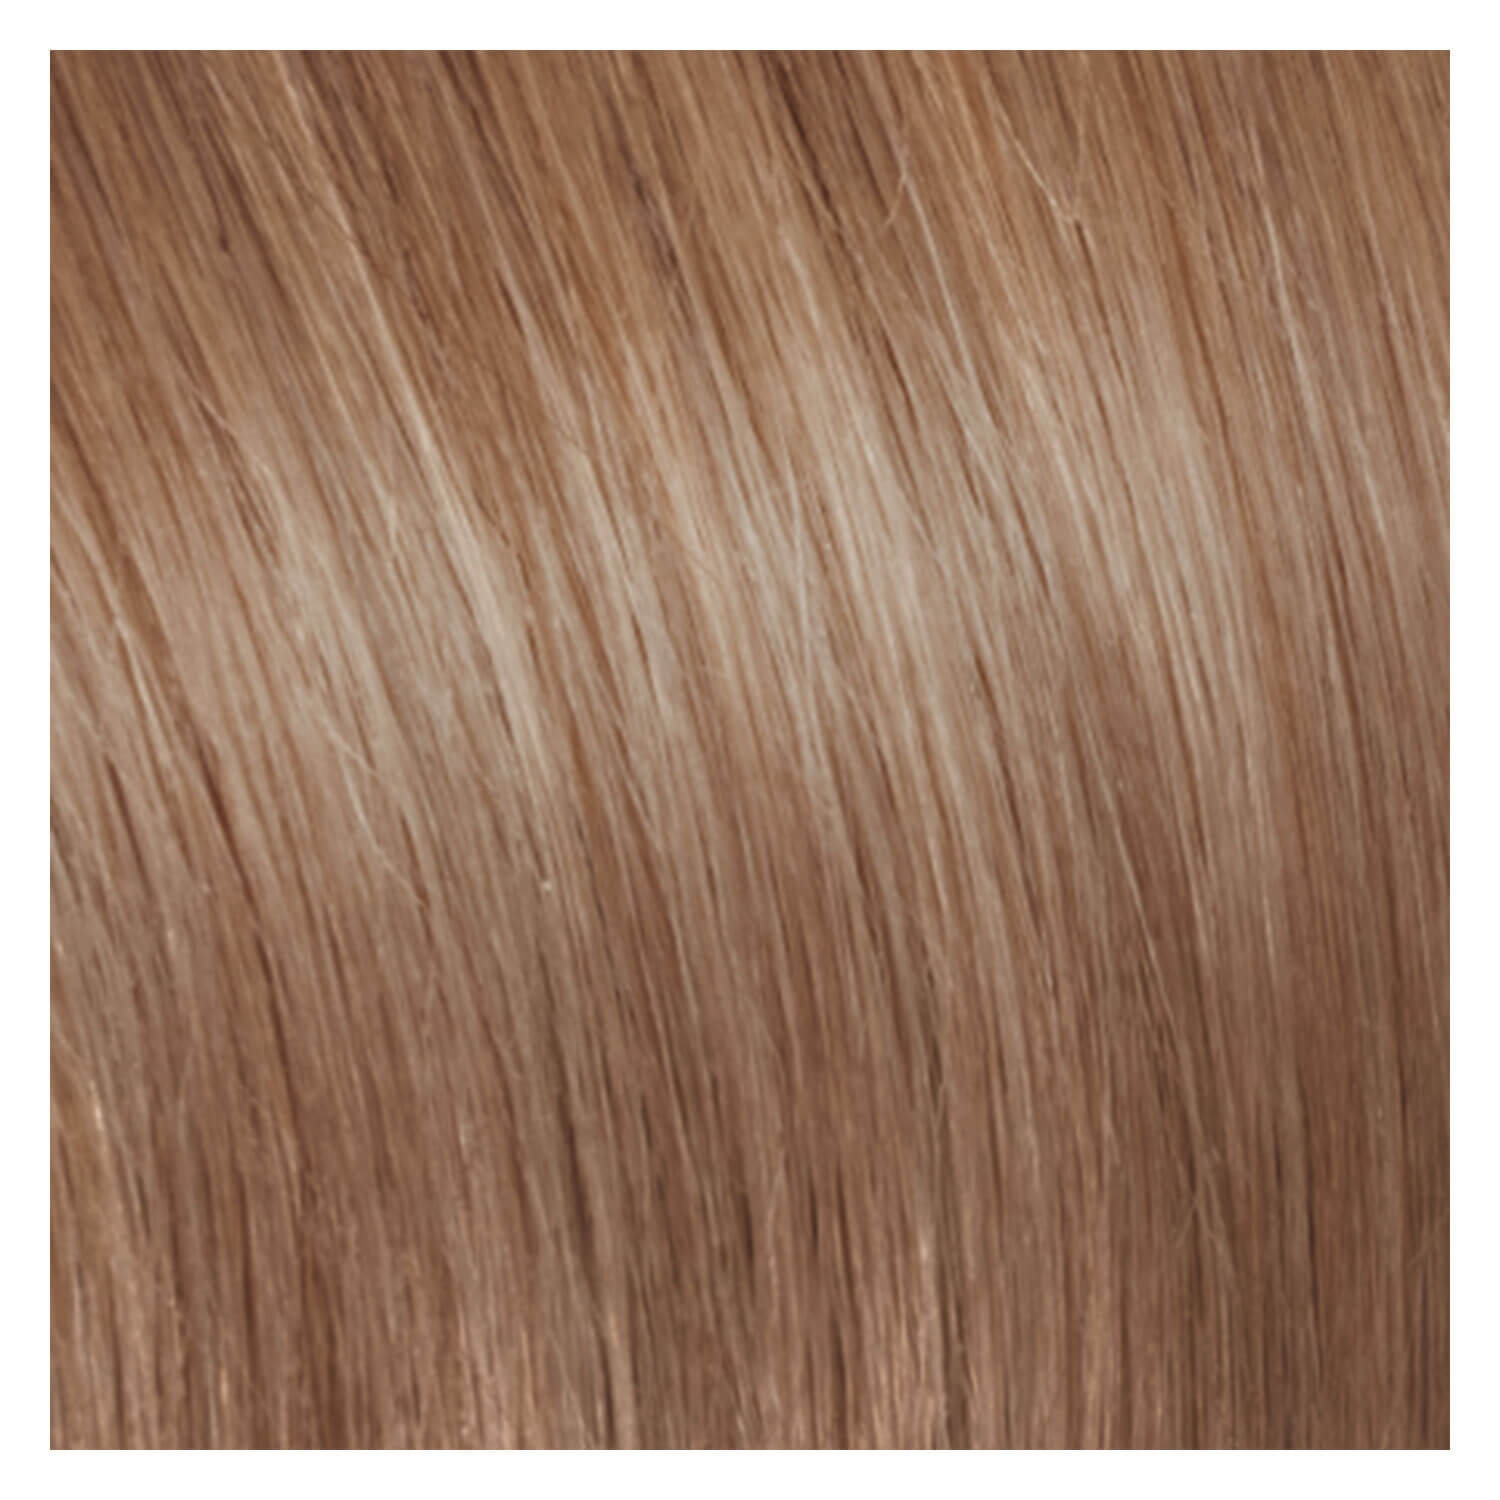 Produktbild von SHE Clip In-System Hair Extensions - 9-teiliges Set 27 Mittel Goldblond 50/55cm